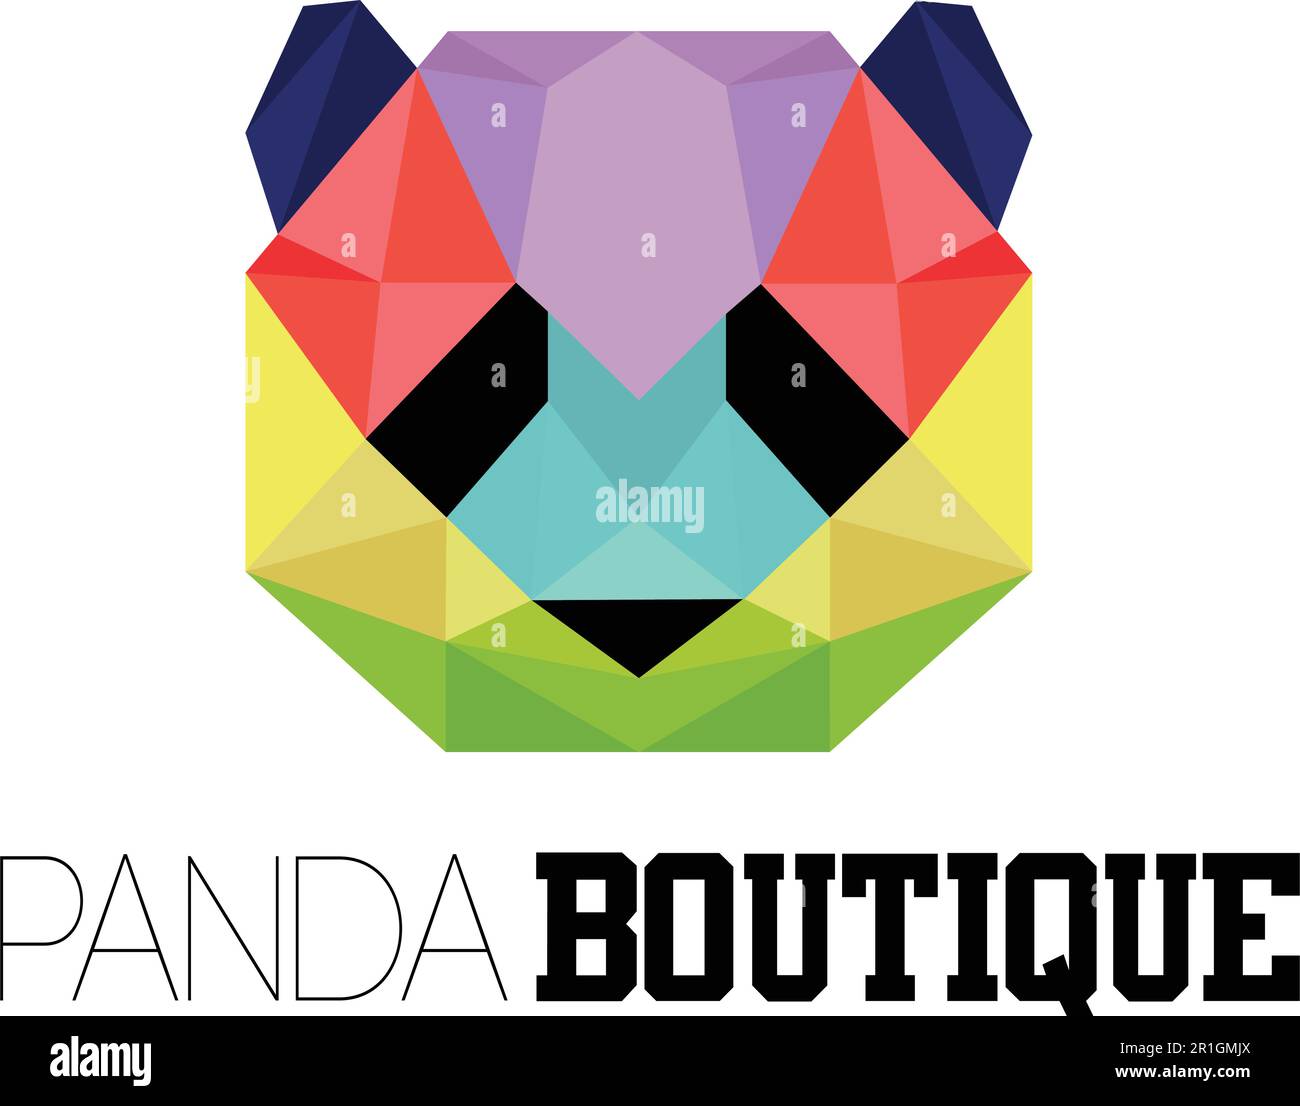 Die Panda Boutique Logo-Vorlage ist ein stilvolles und vielseitiges Design, das die Eleganz und den Charme von Pandas in einem Boutique-Ambiente widerspiegelt. Stock Vektor